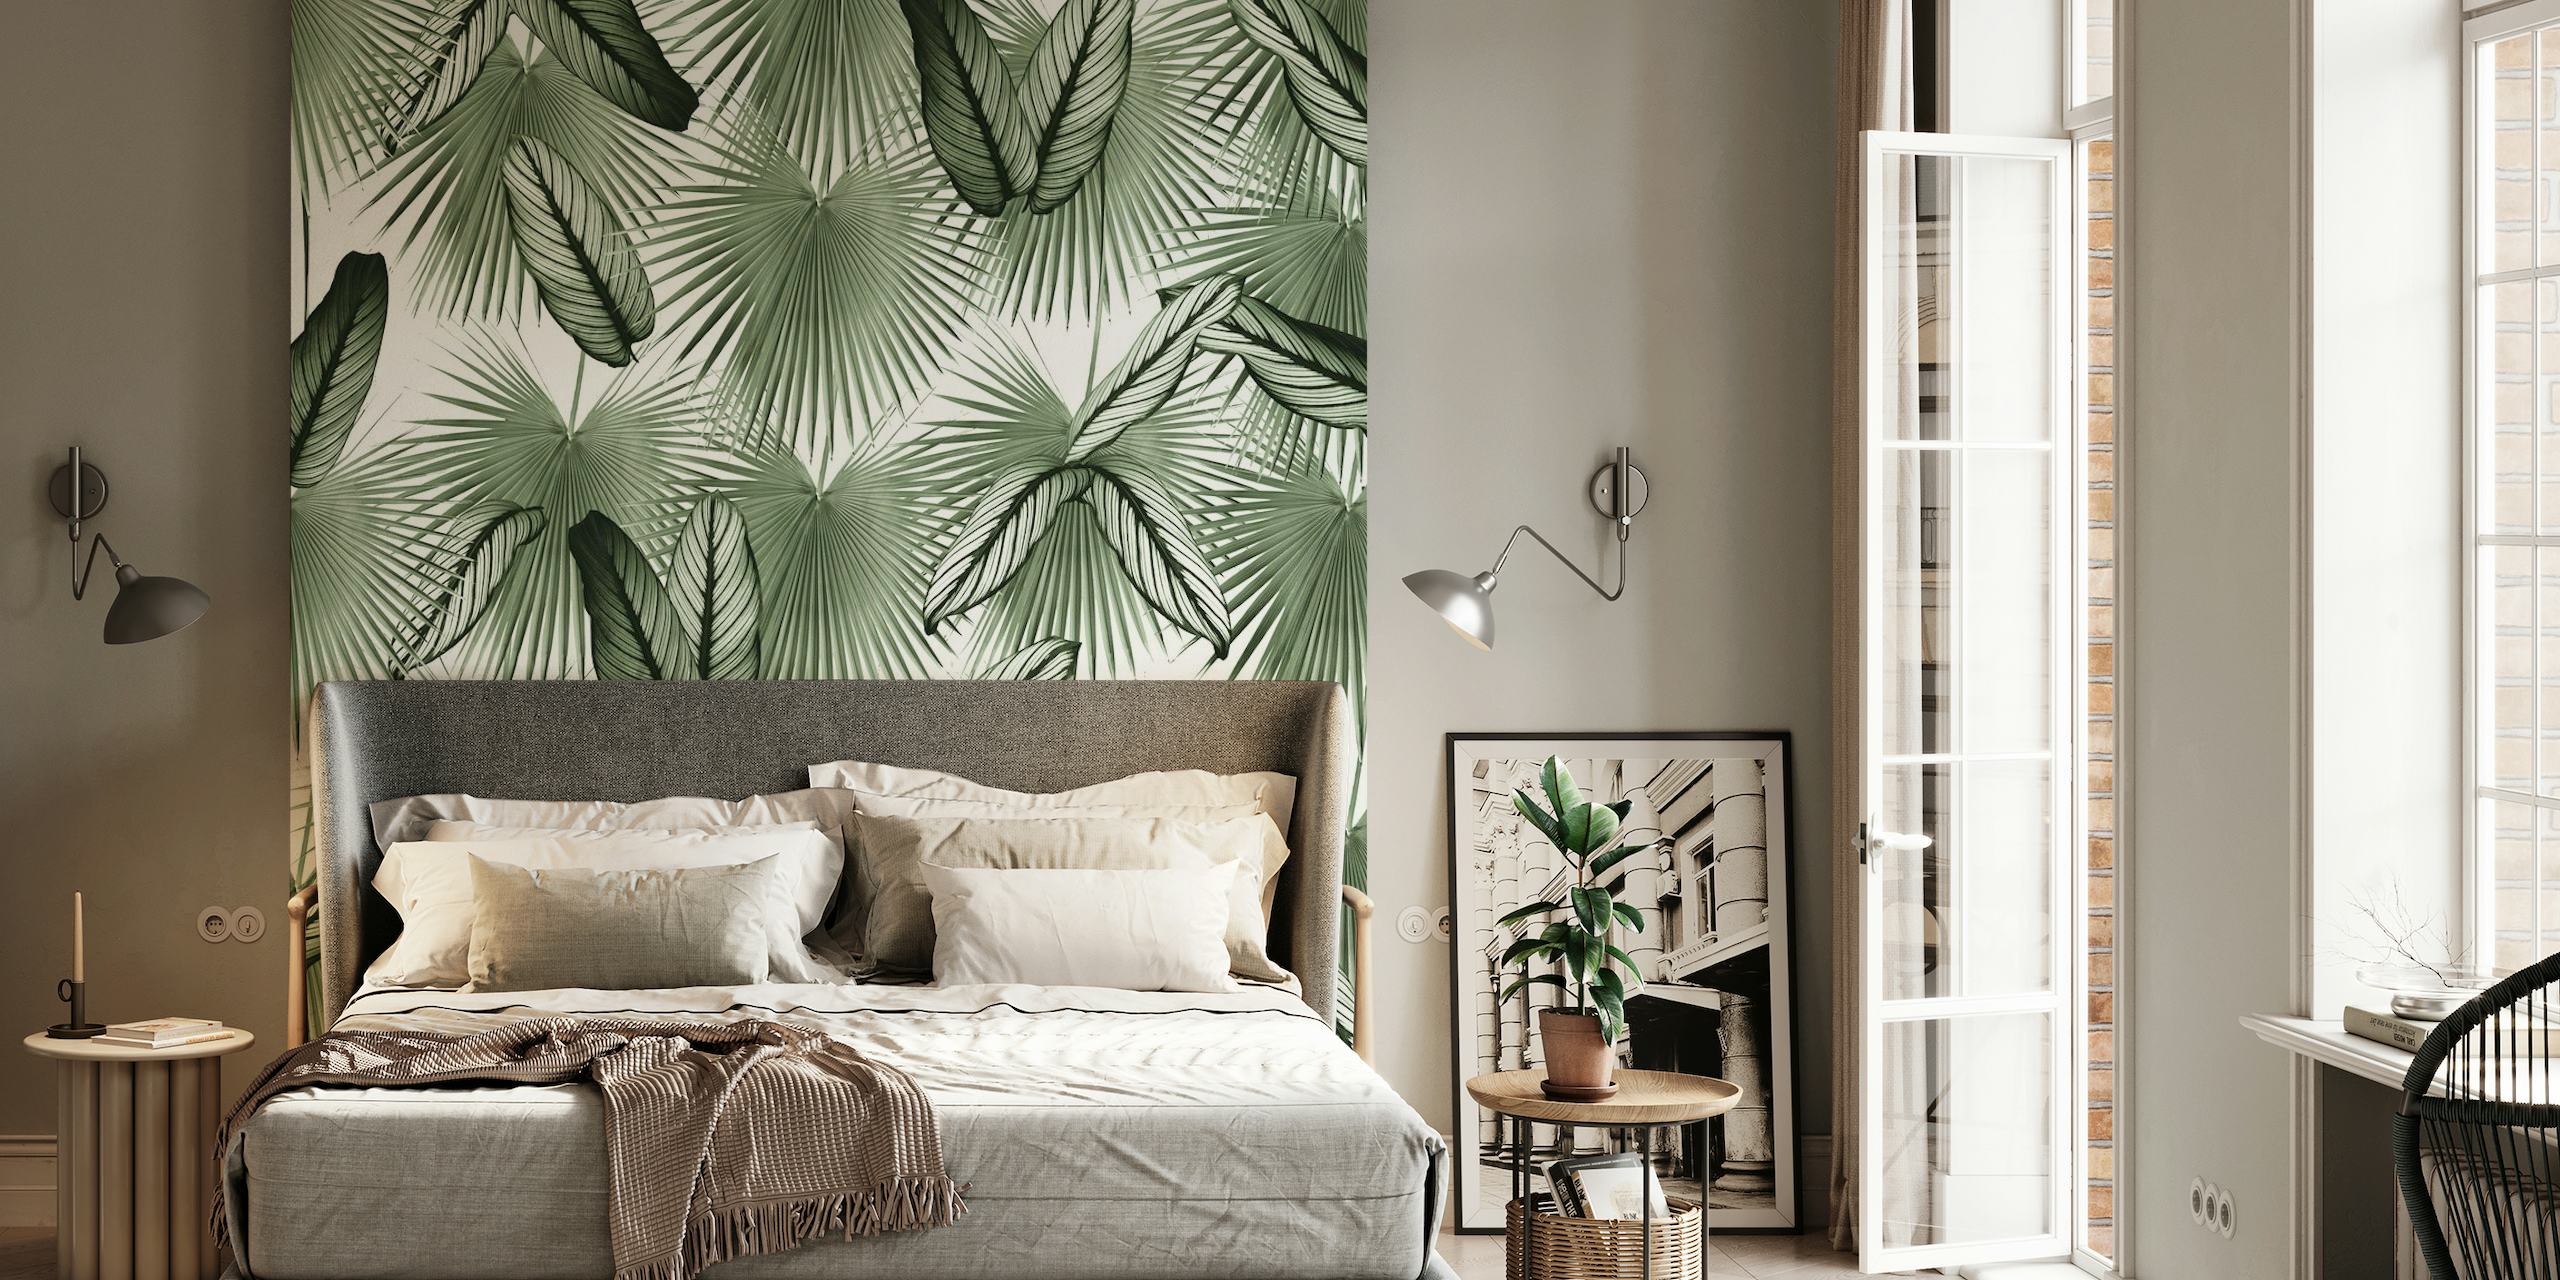 Peinture murale Calathea Fan Palm Leaves montrant un feuillage tropical détaillé dans des verts monochromes.